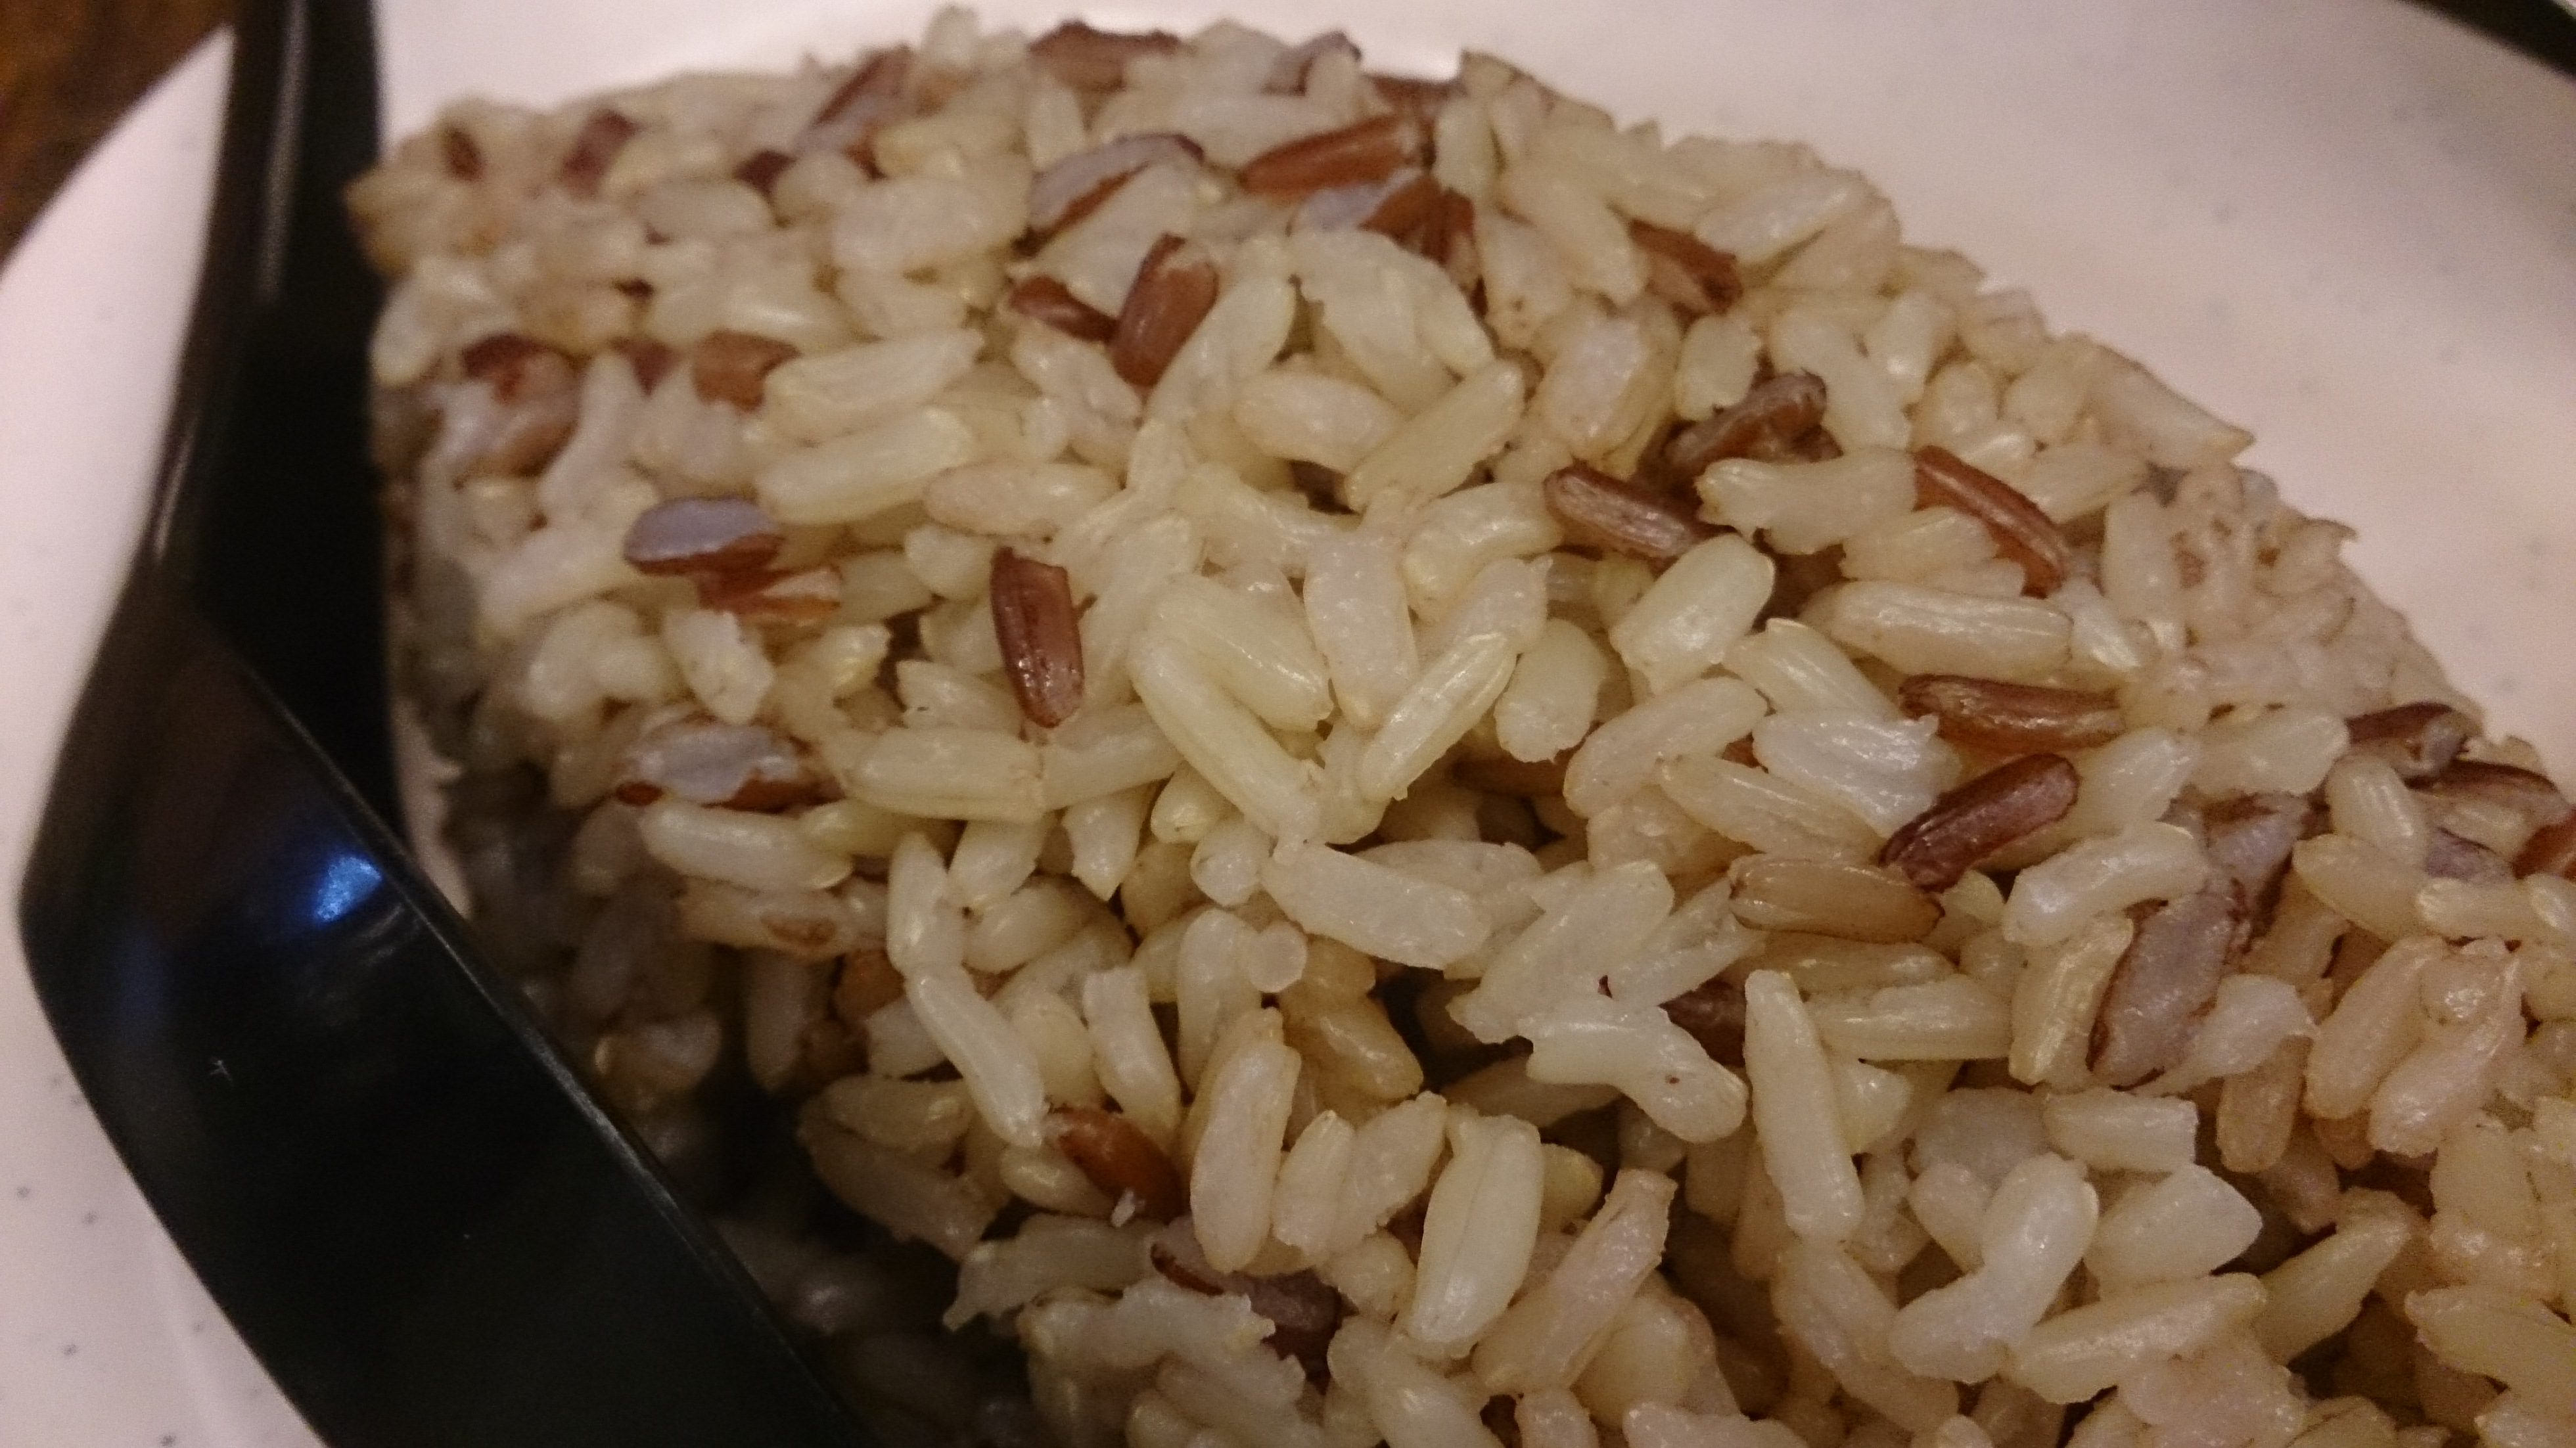 bowl of brown rice